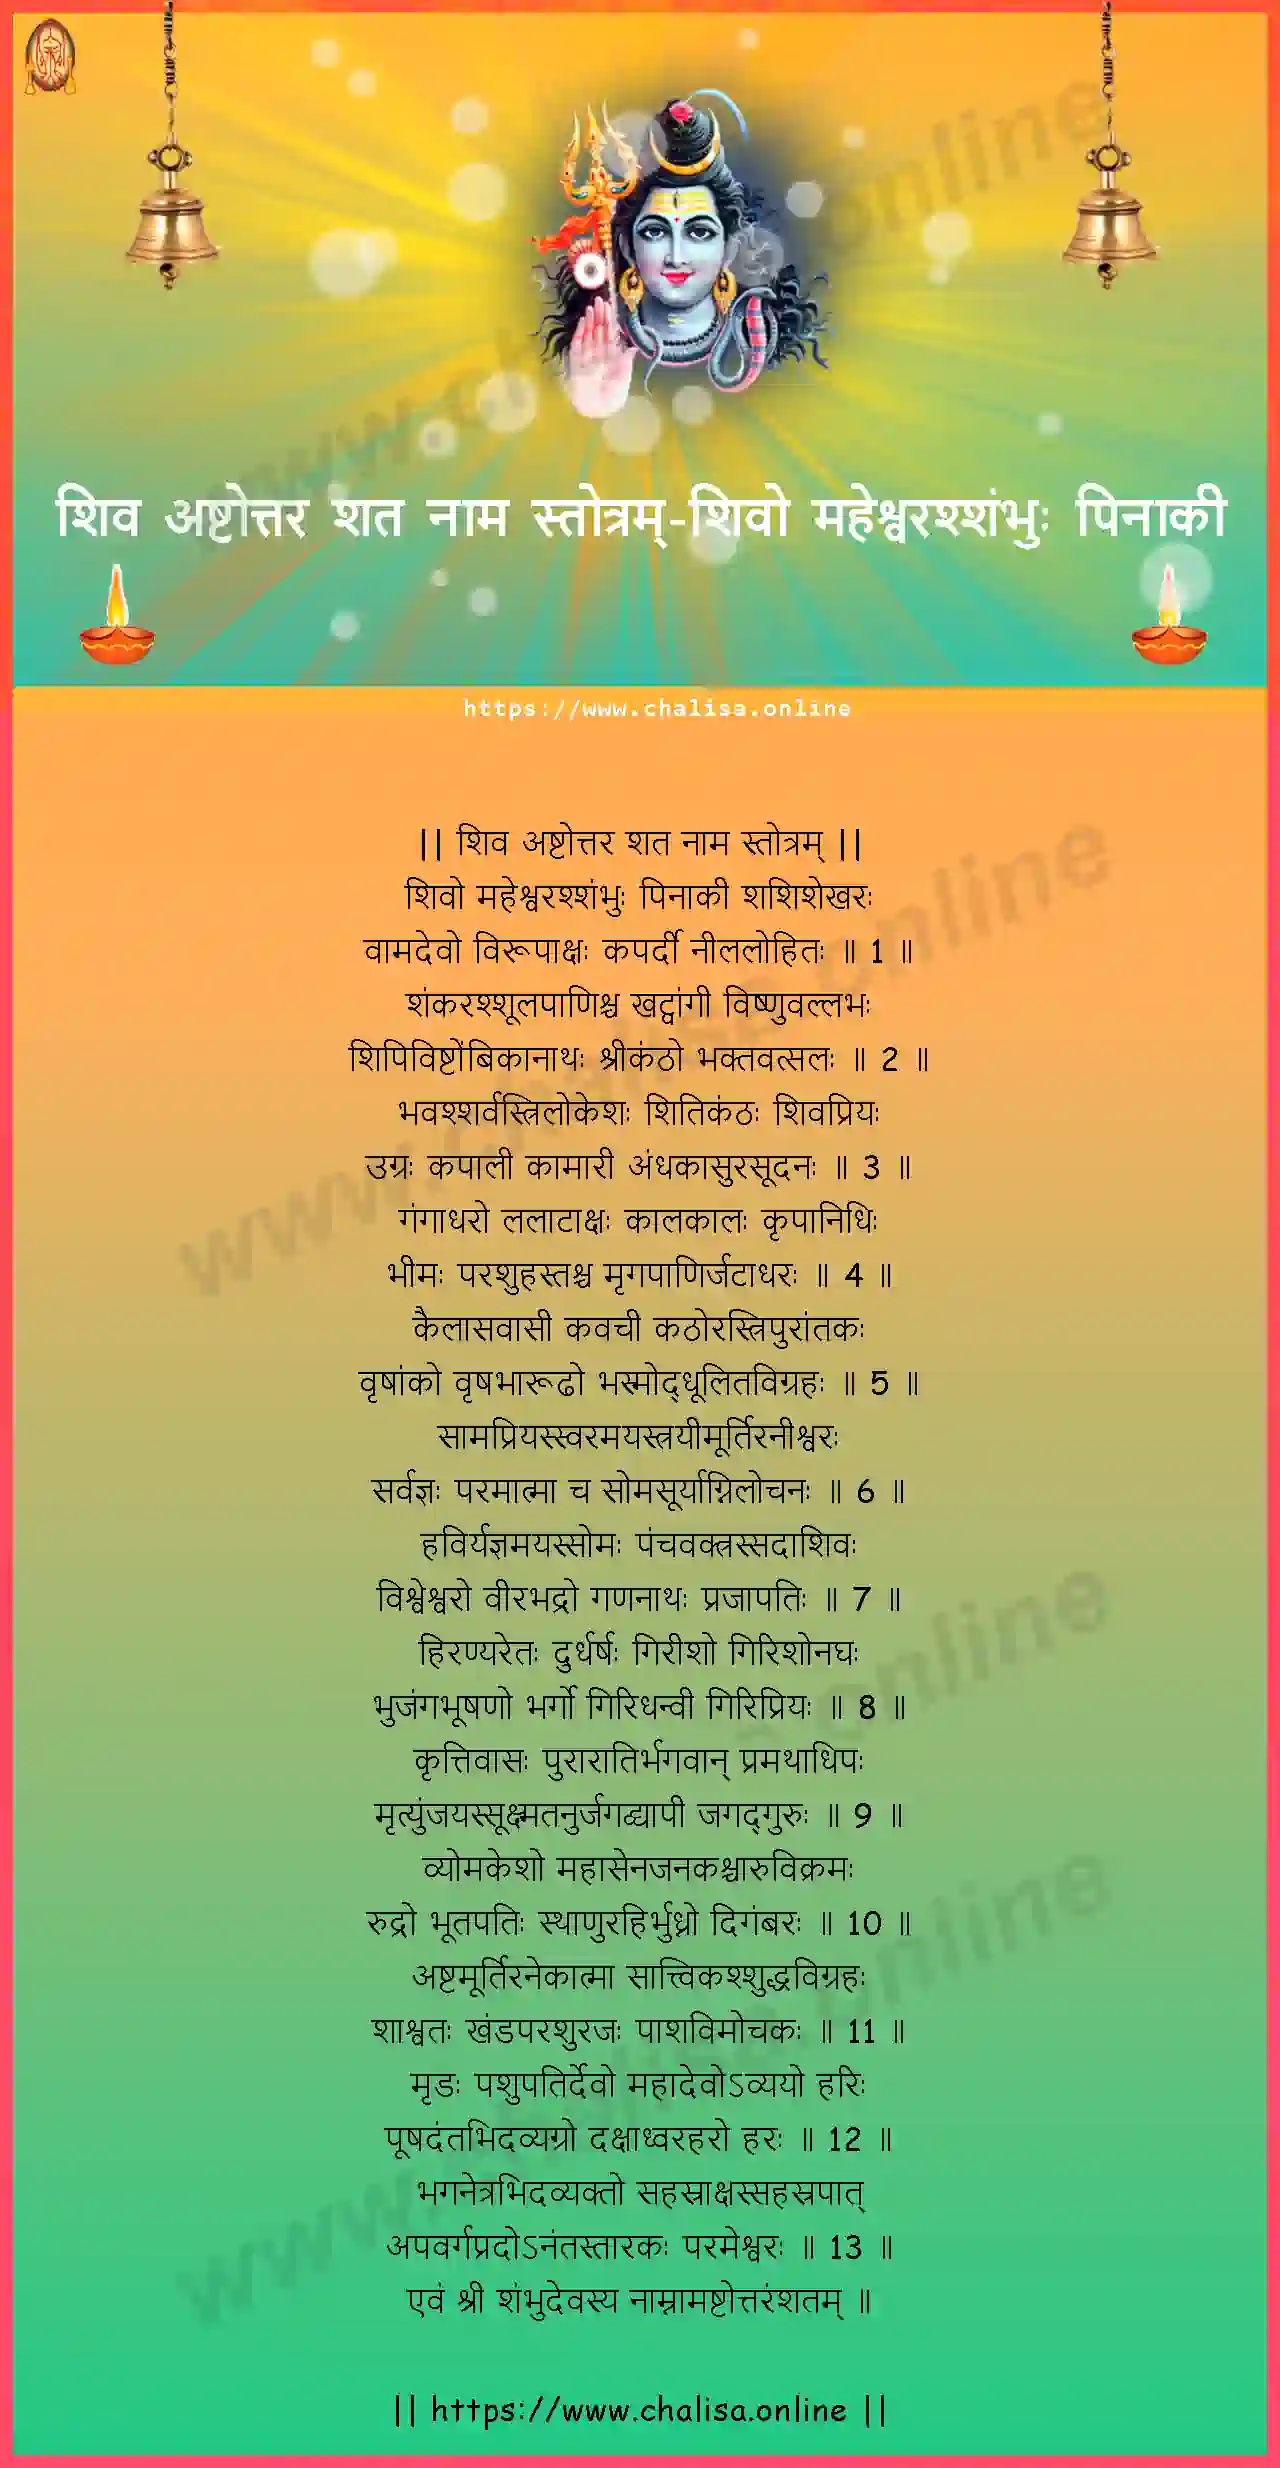 -shiva-ashtottara-sata-nama-stotram-hindi-hindi-lyrics-download